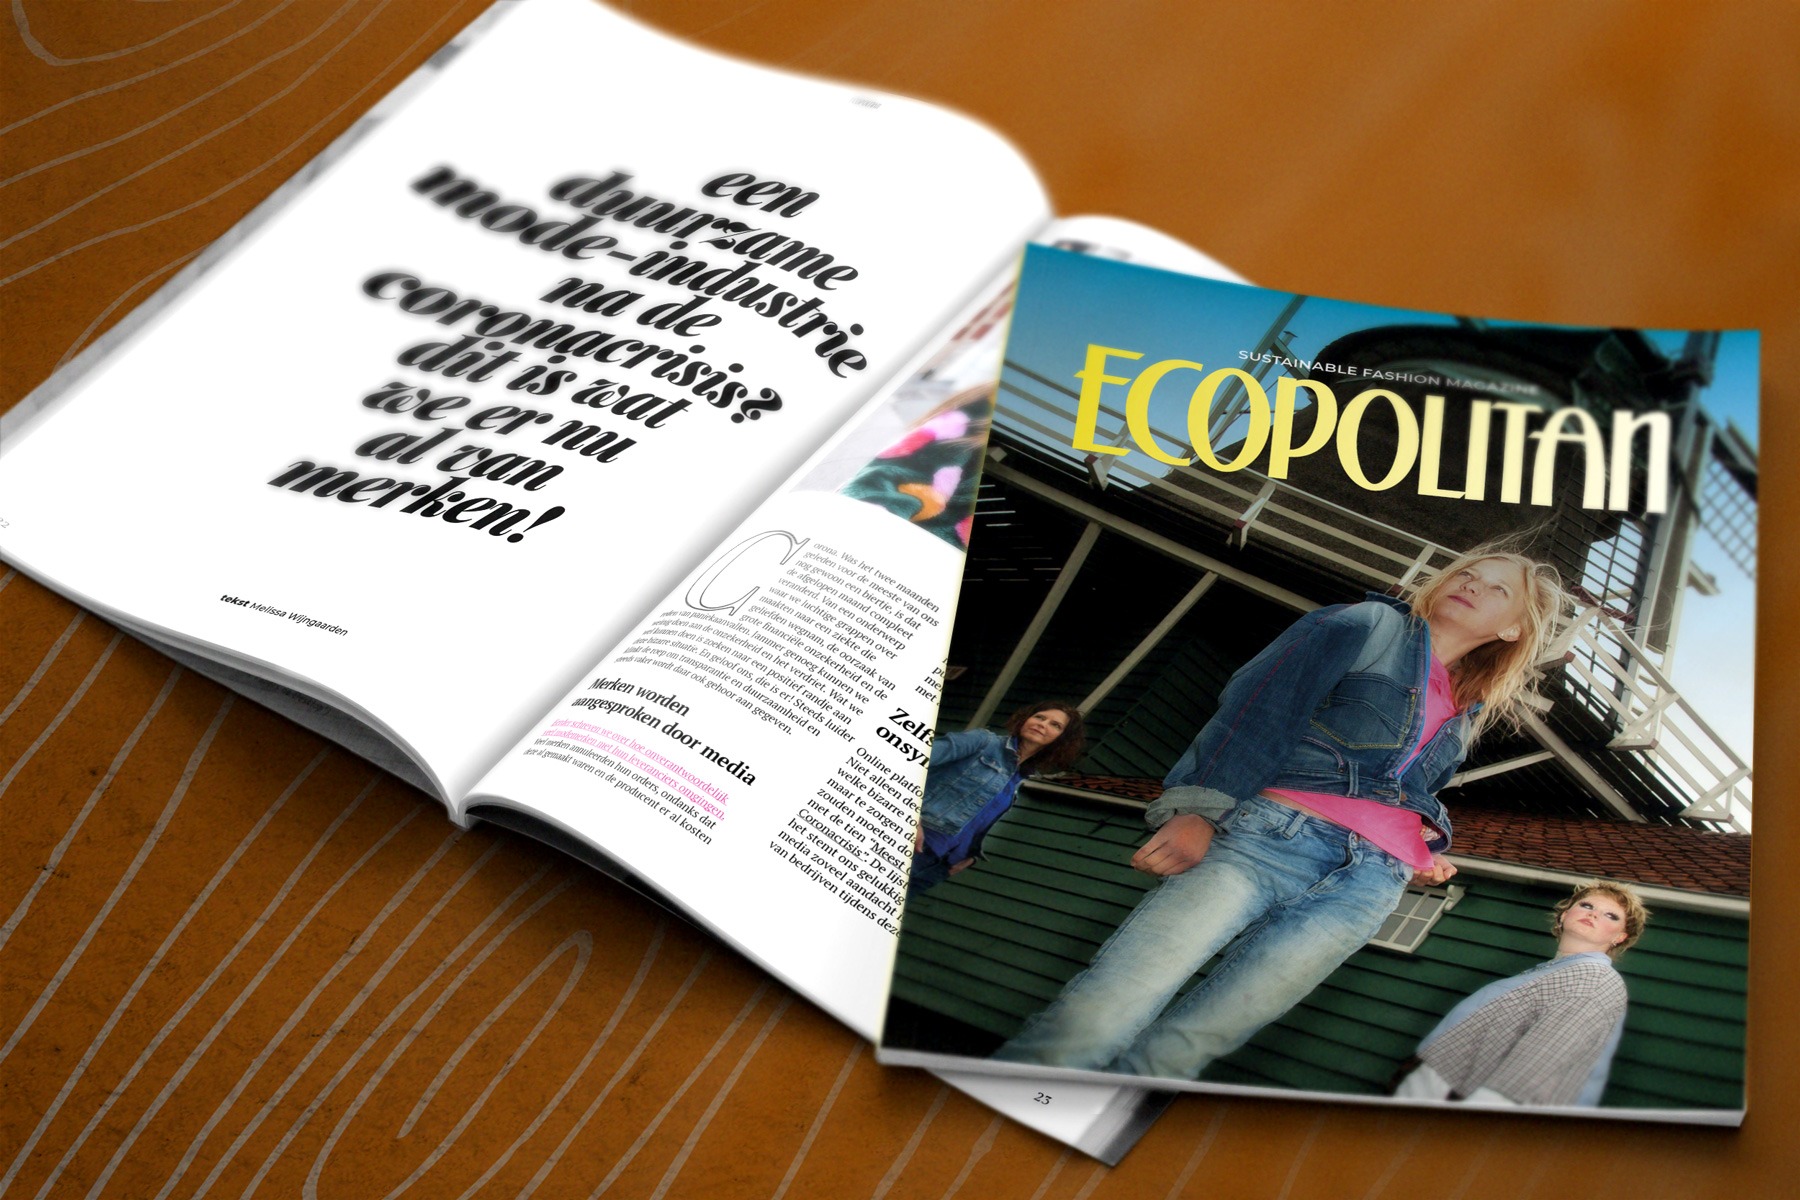 Ecopolitan Magazine - Mapsz